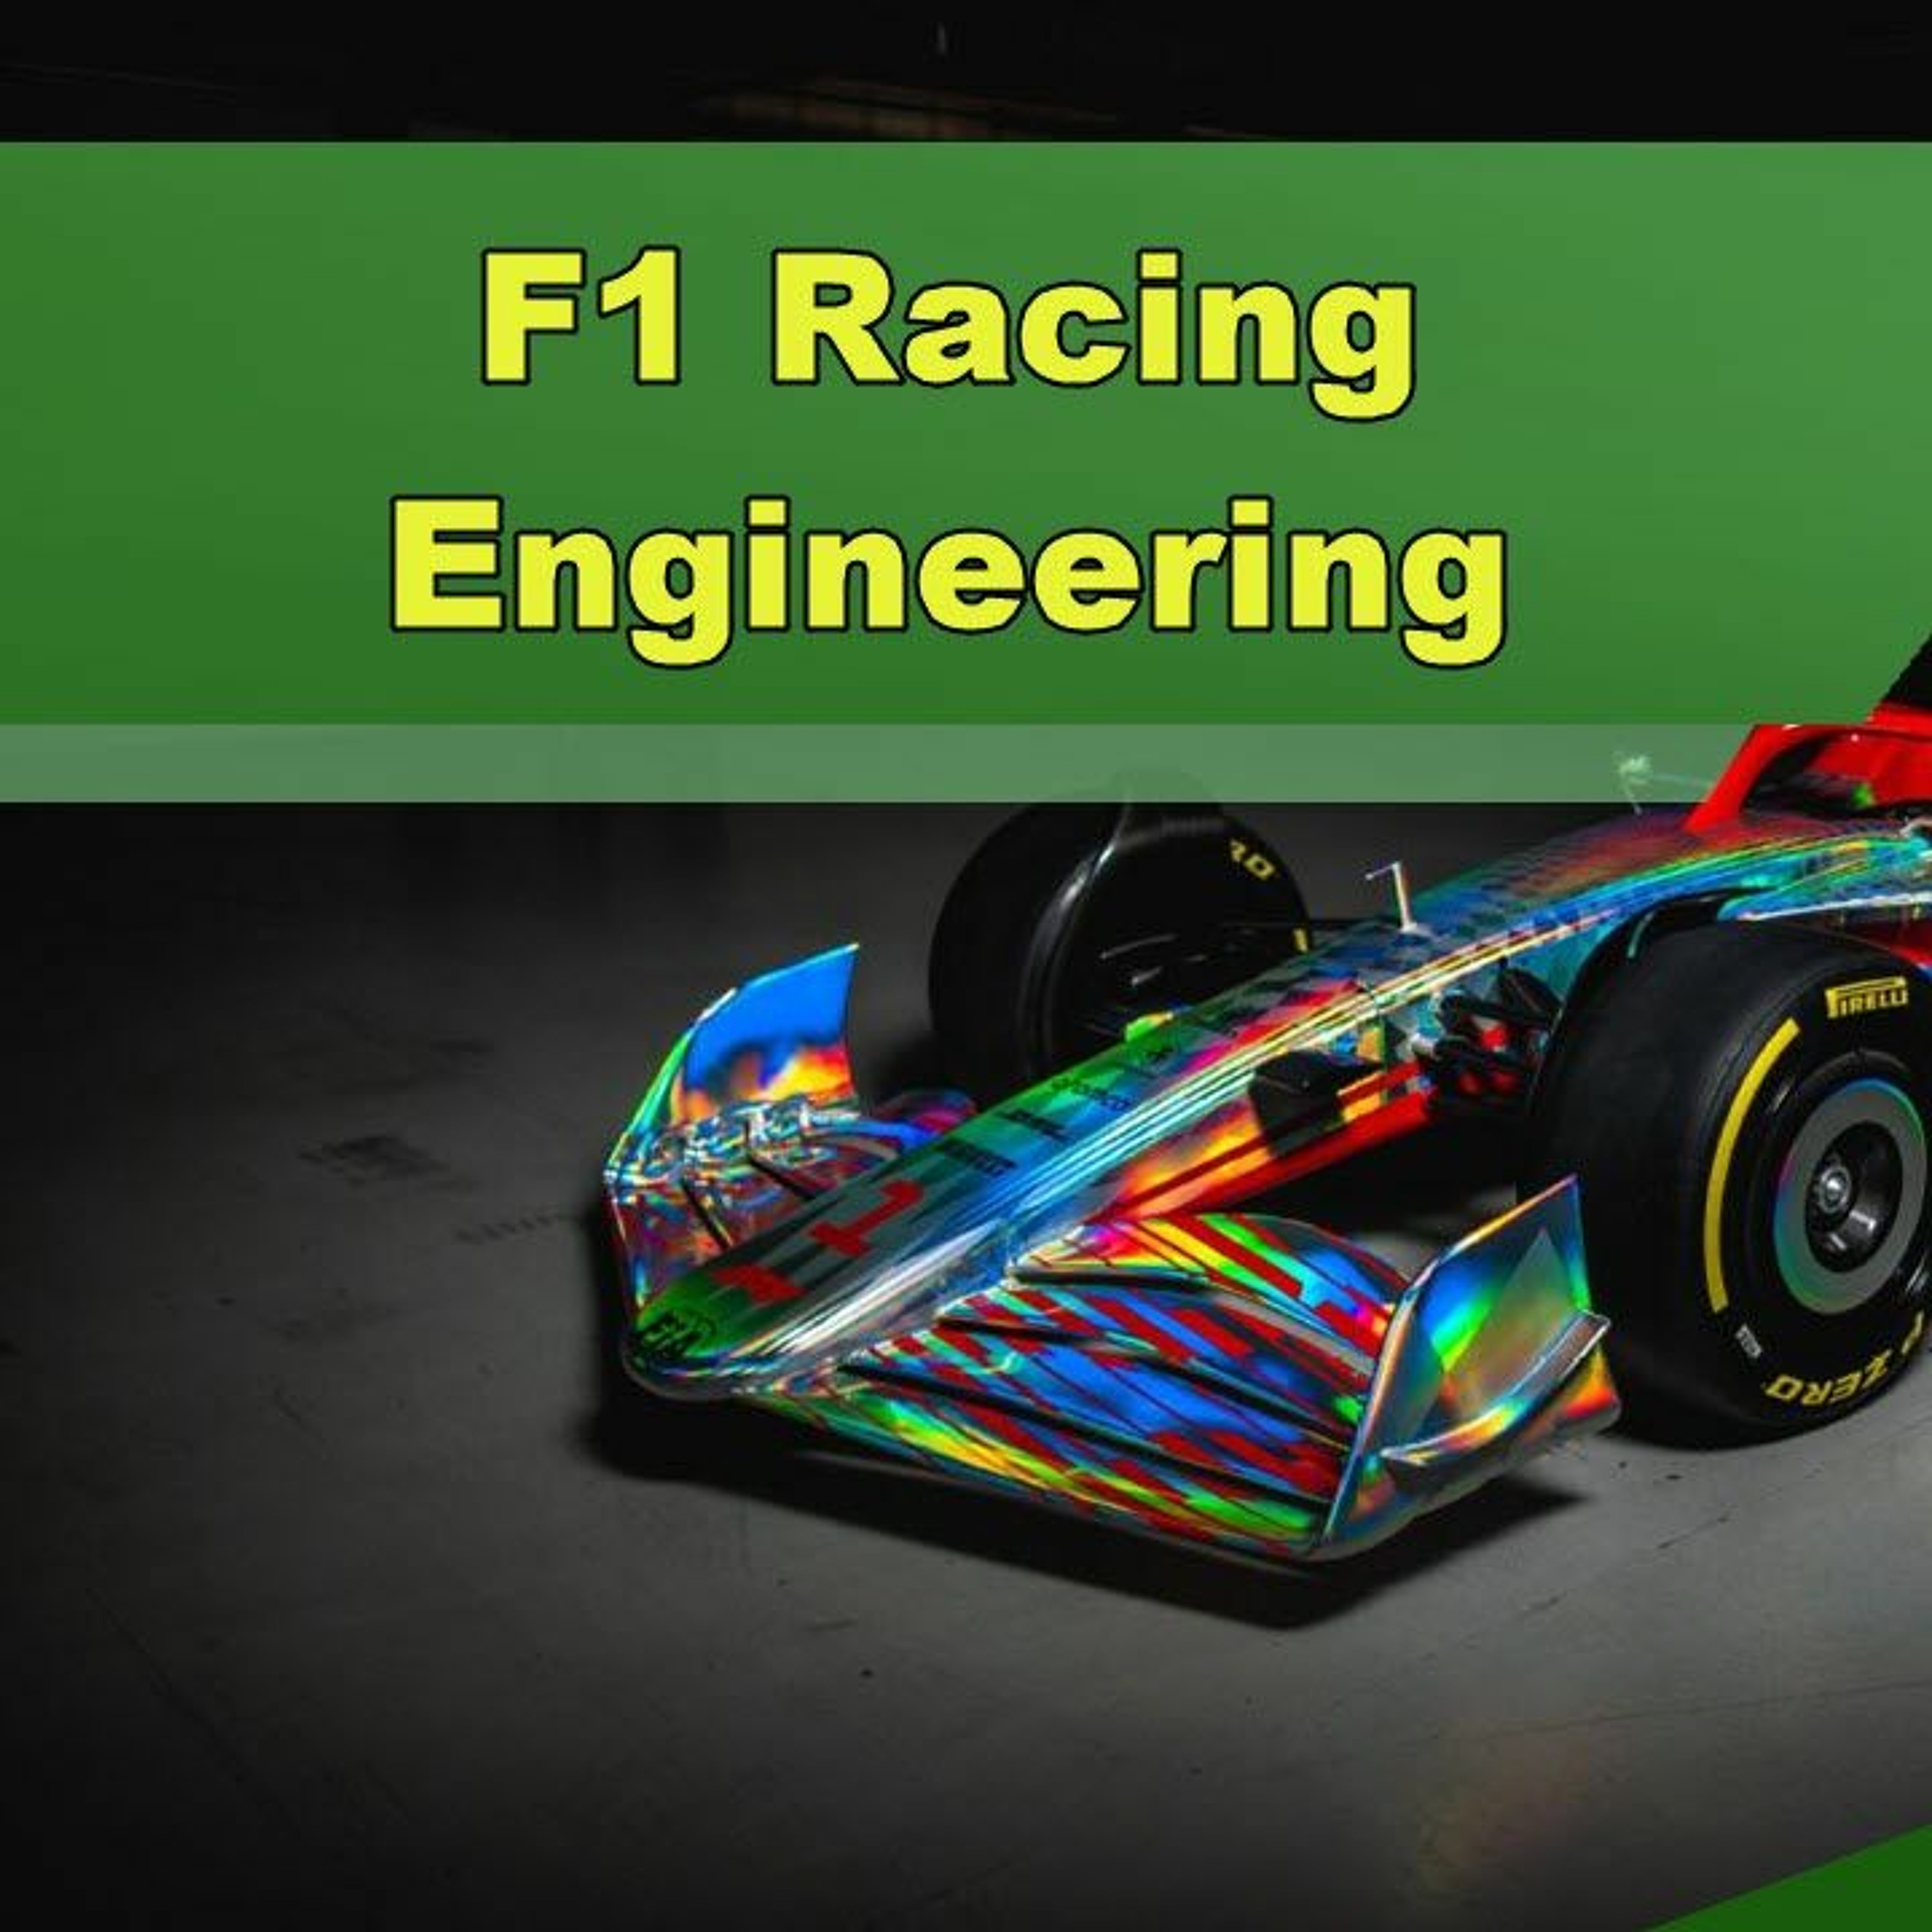 F1 Racing Engineering - Episode 325